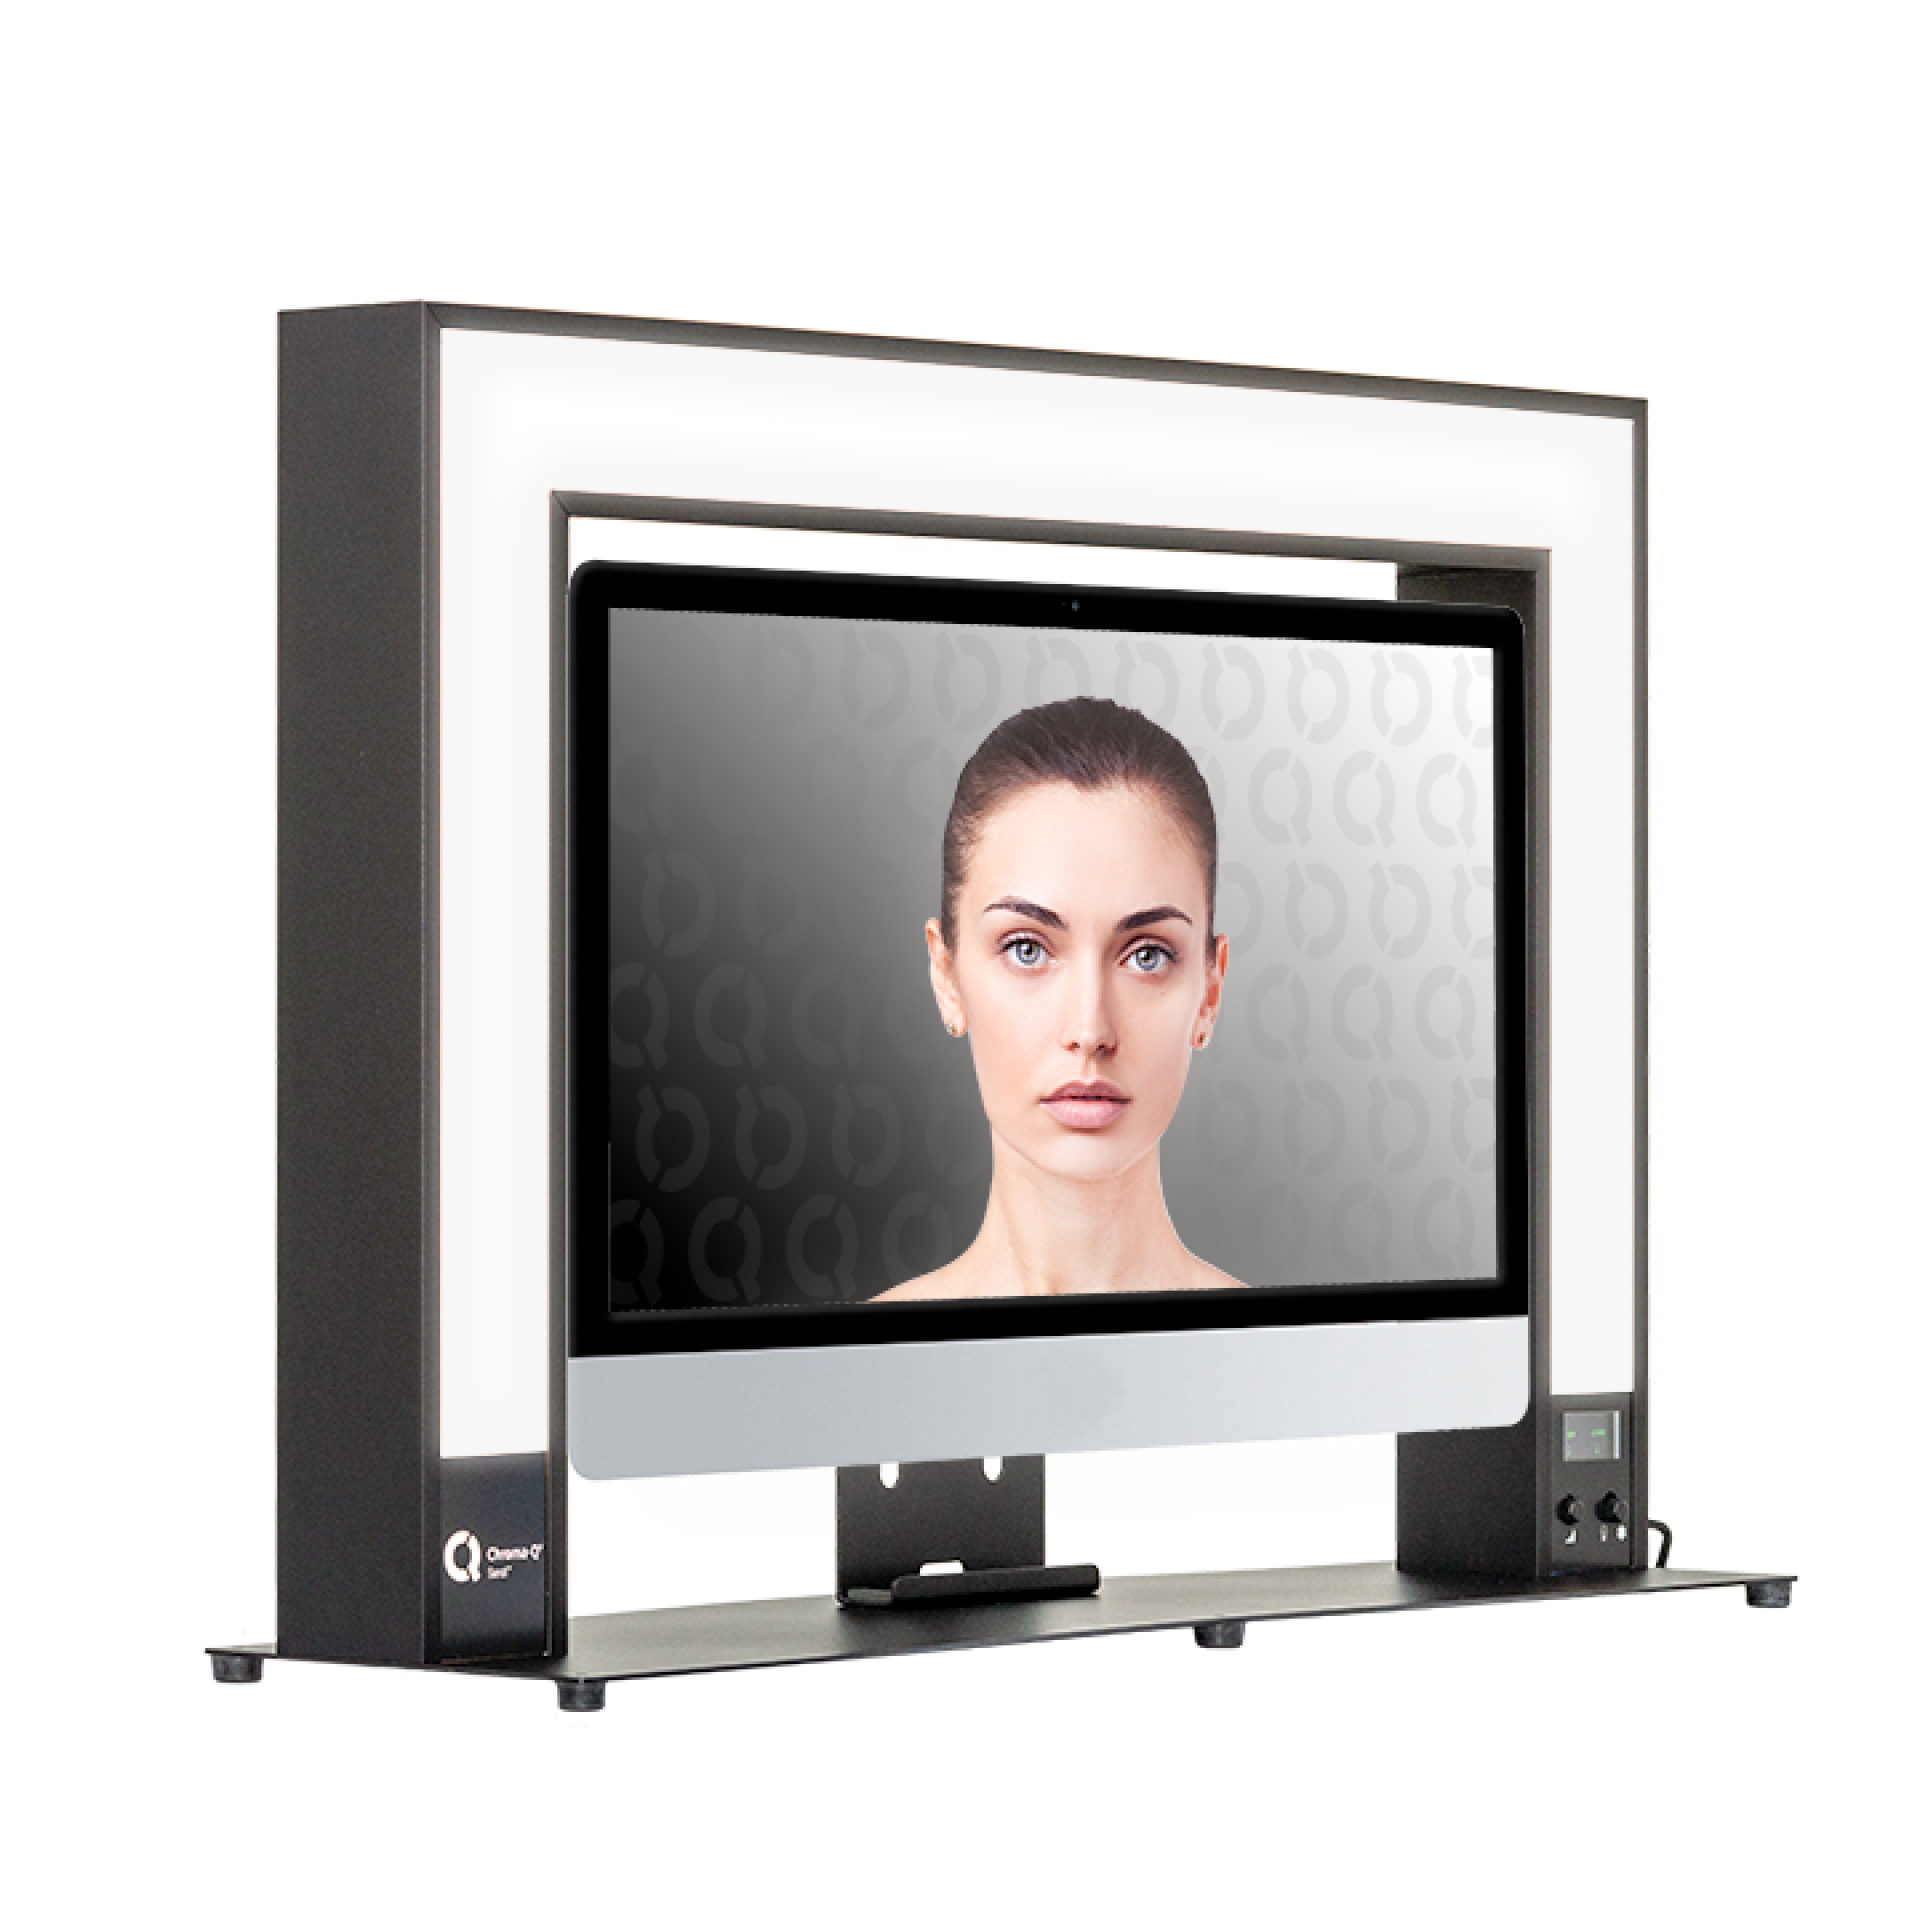 Chroma-Q Sandi - Natural white light with monitor